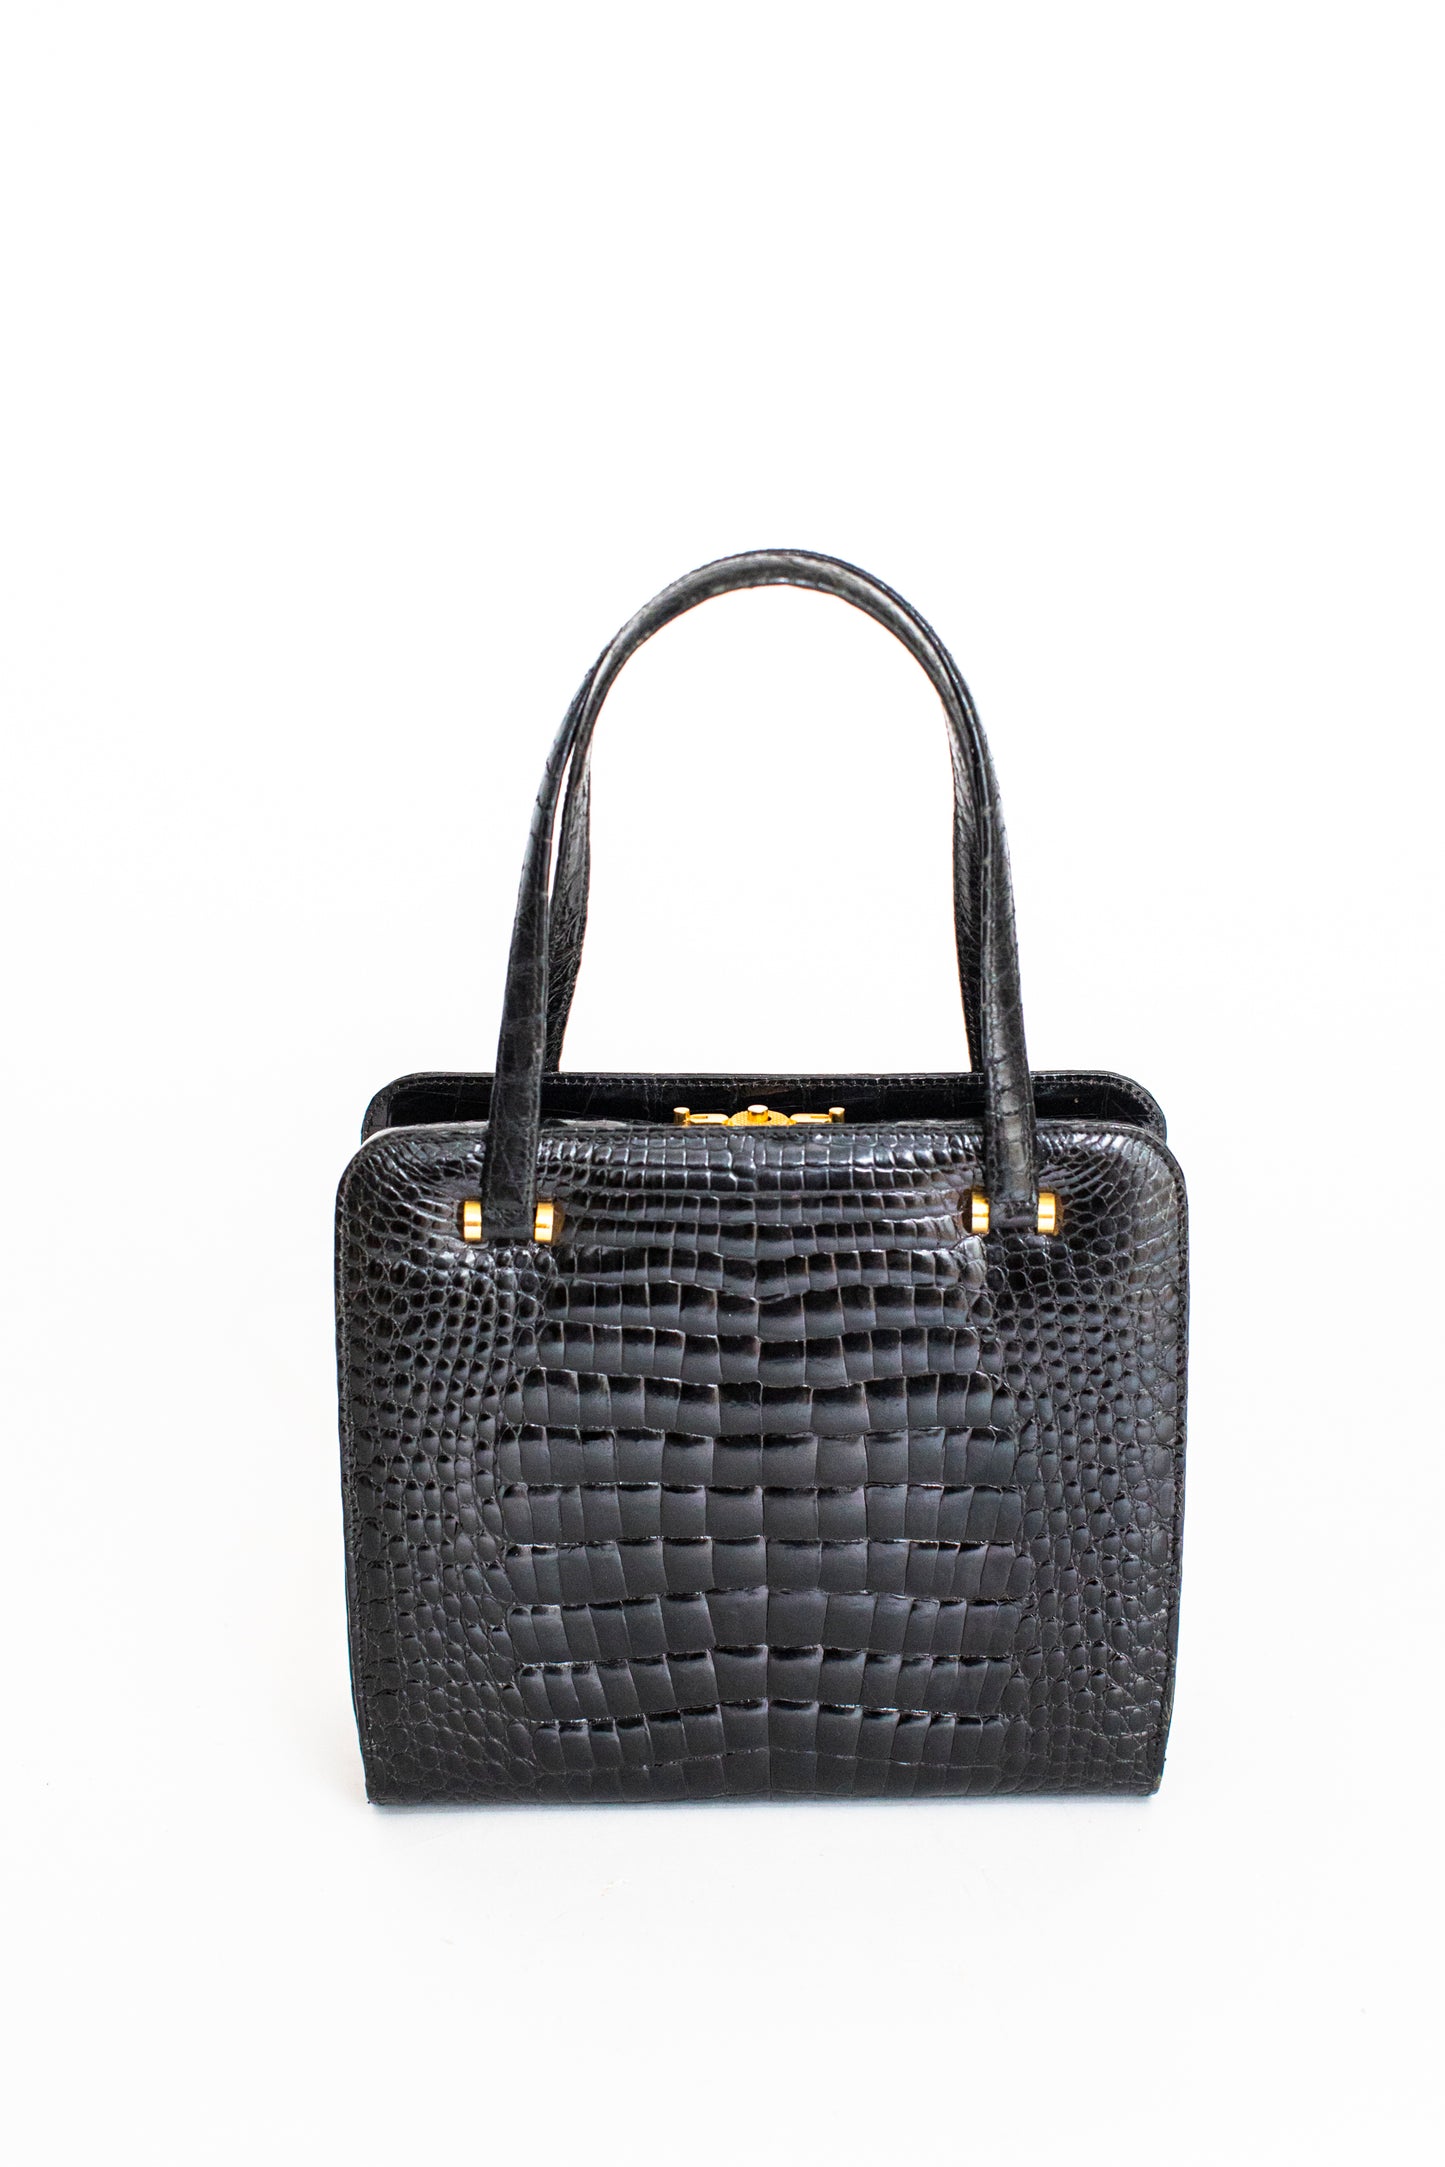 1950 Vintage Black Croc Leather Handbag